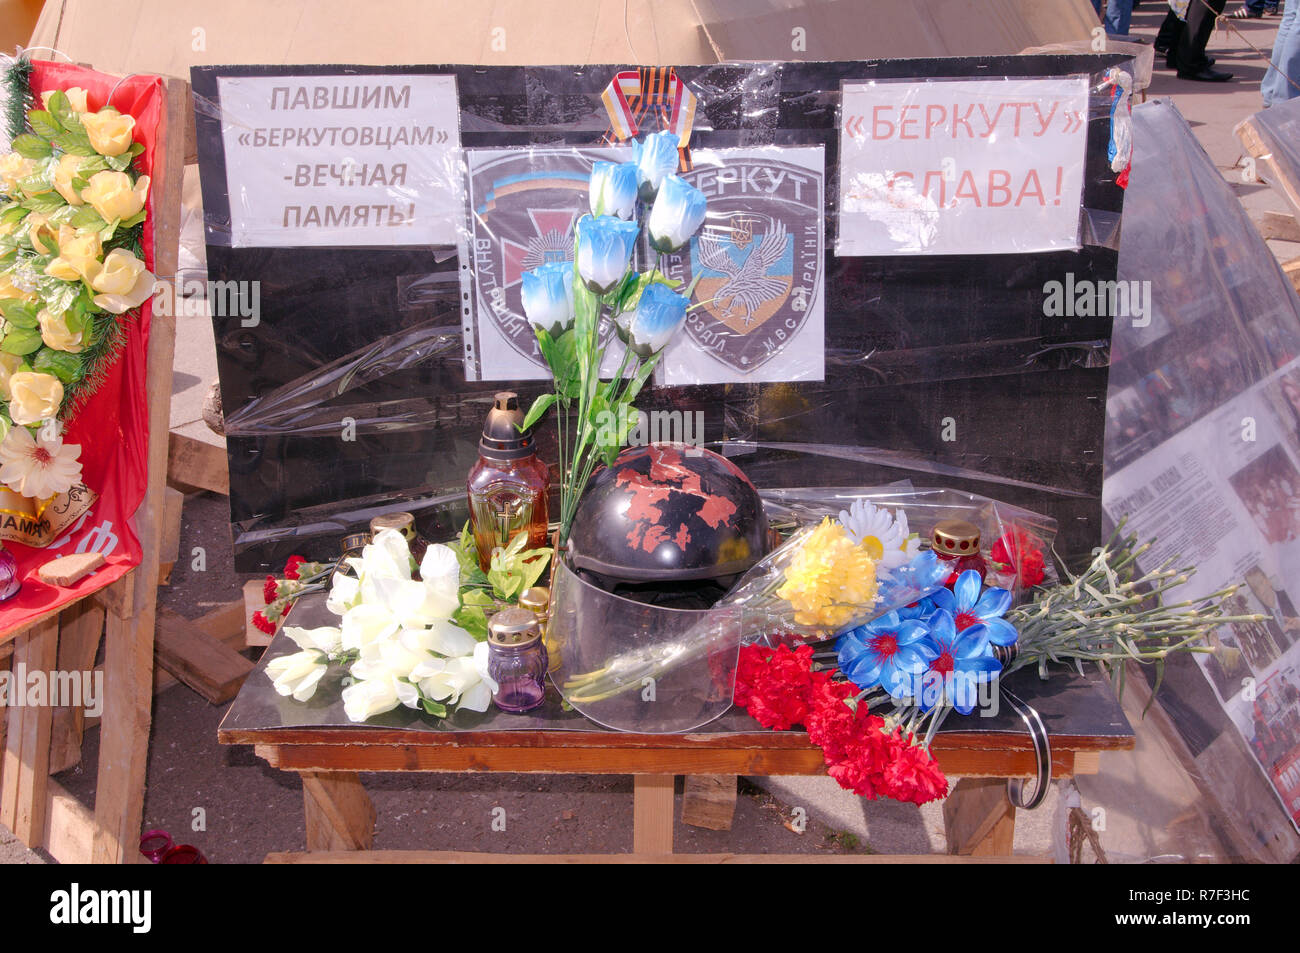 Ucrania conflicto, reunión de la protesta de la Asamblea del Pueblo, campo Kulikovo Antimaidan, Odessa, Ucrania Foto de stock